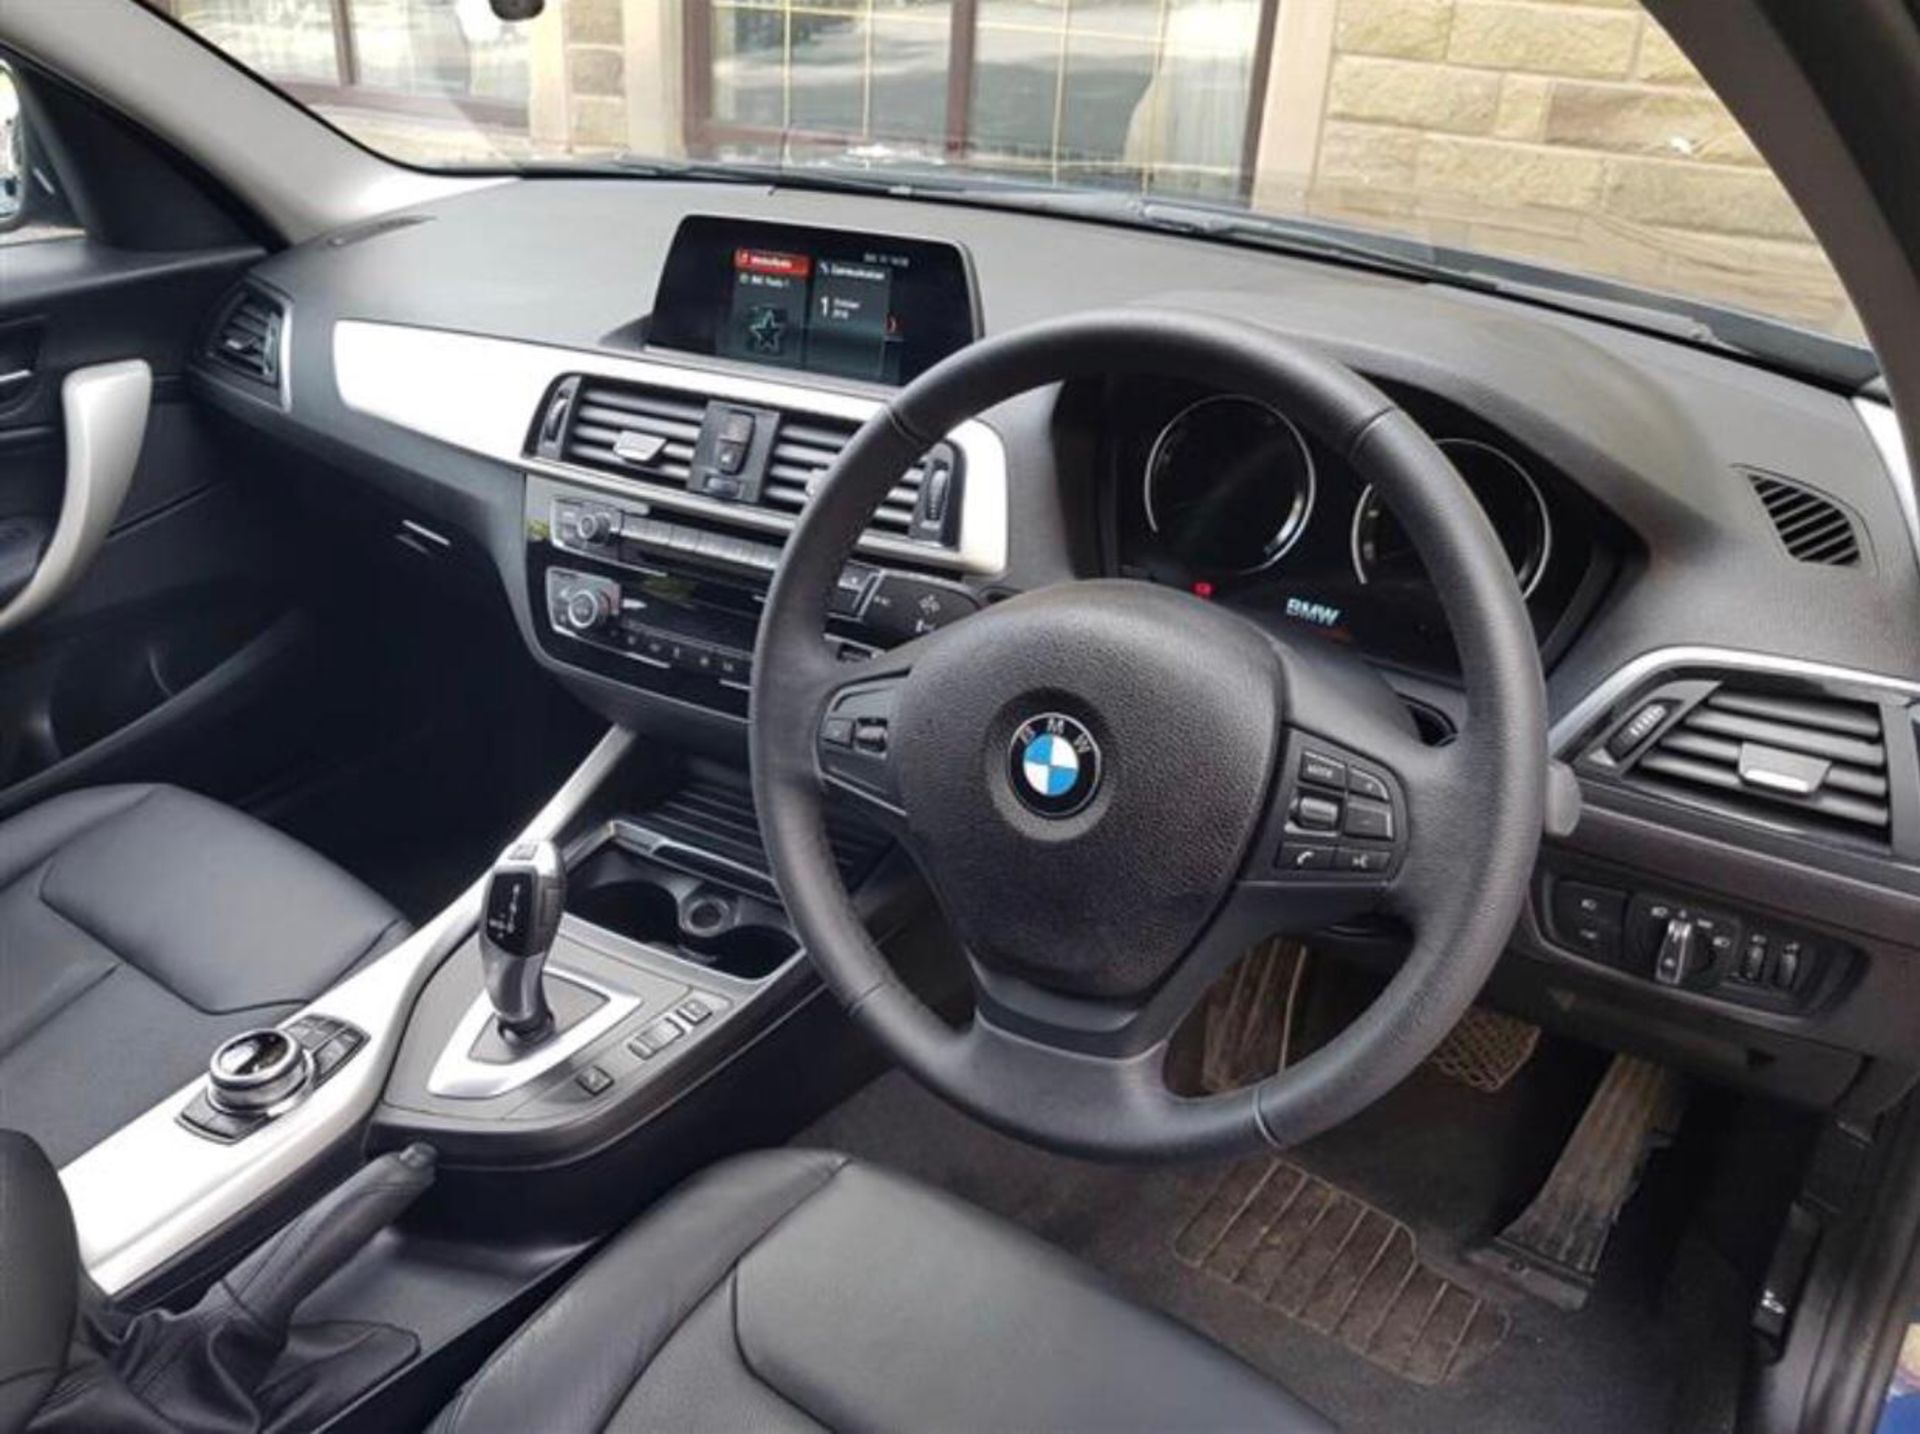 2018/67 REG BMW 118D SE AUTOMATIC BLUE DIESEL 5 DOOR HATCHBACK, SHOWING 0 FORMER KEEPERS *NO VAT* - Image 16 of 18